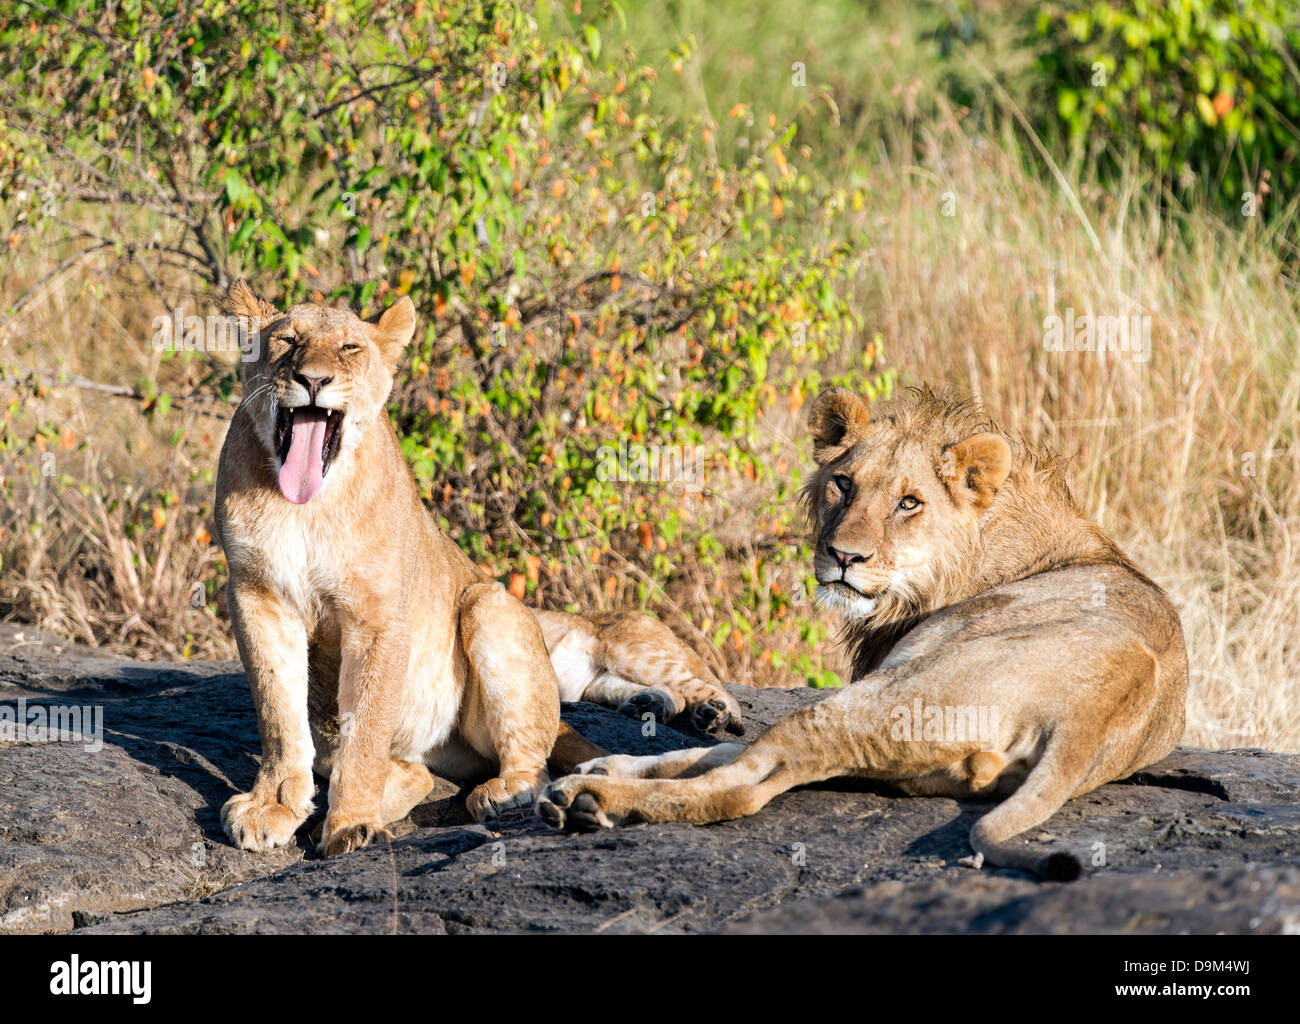 Deux lions adultes Panthera leo reposant Kicheche Masai Mara Kenya Afrique Banque D'Images